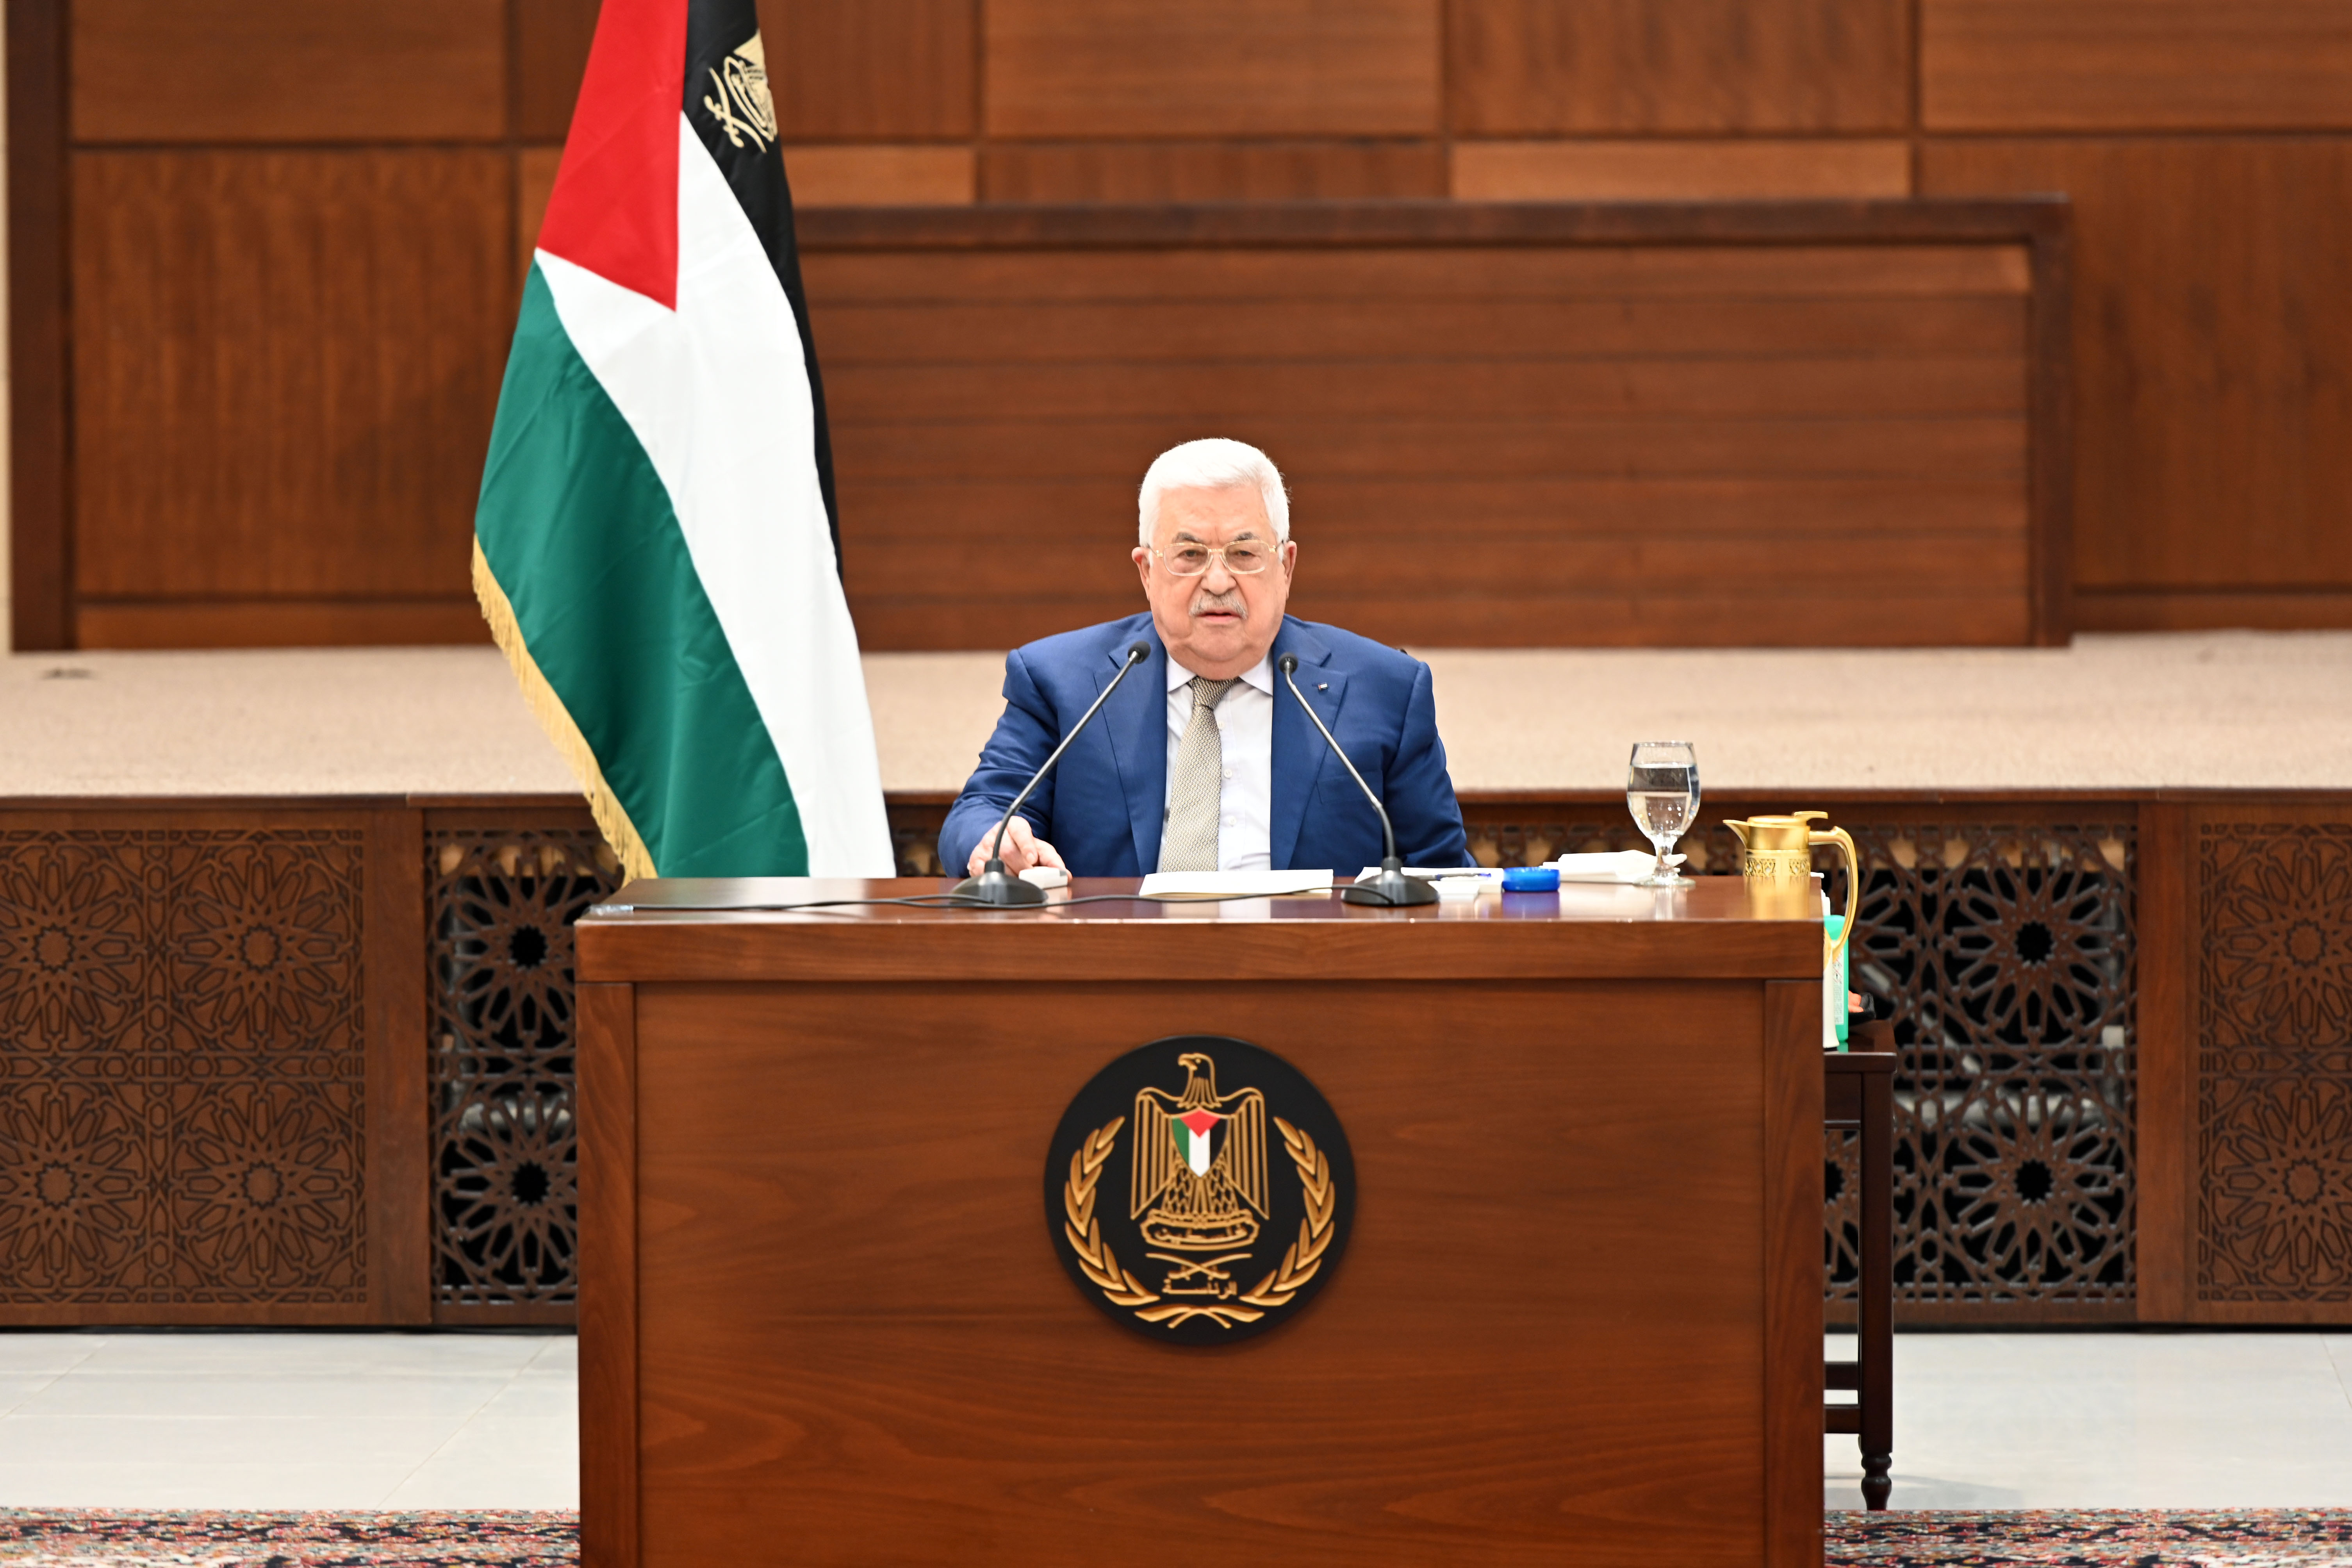 الرئيس يترأس اجتماعا للقيادة الفلسطينية